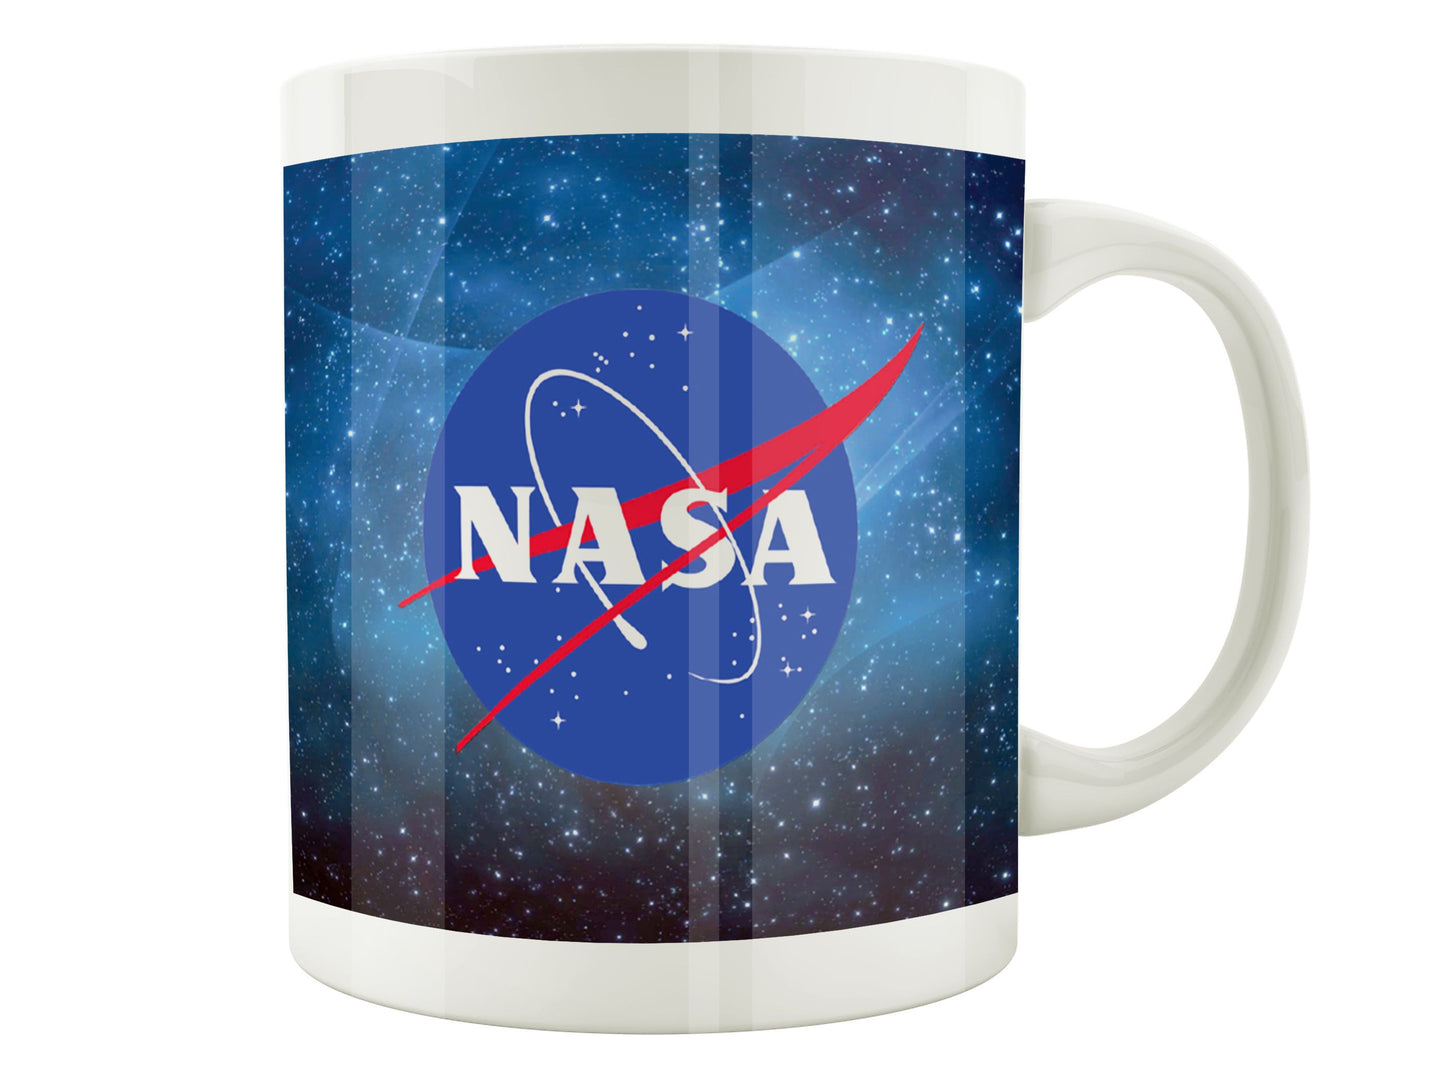 NASA Mug - NASA in the Space